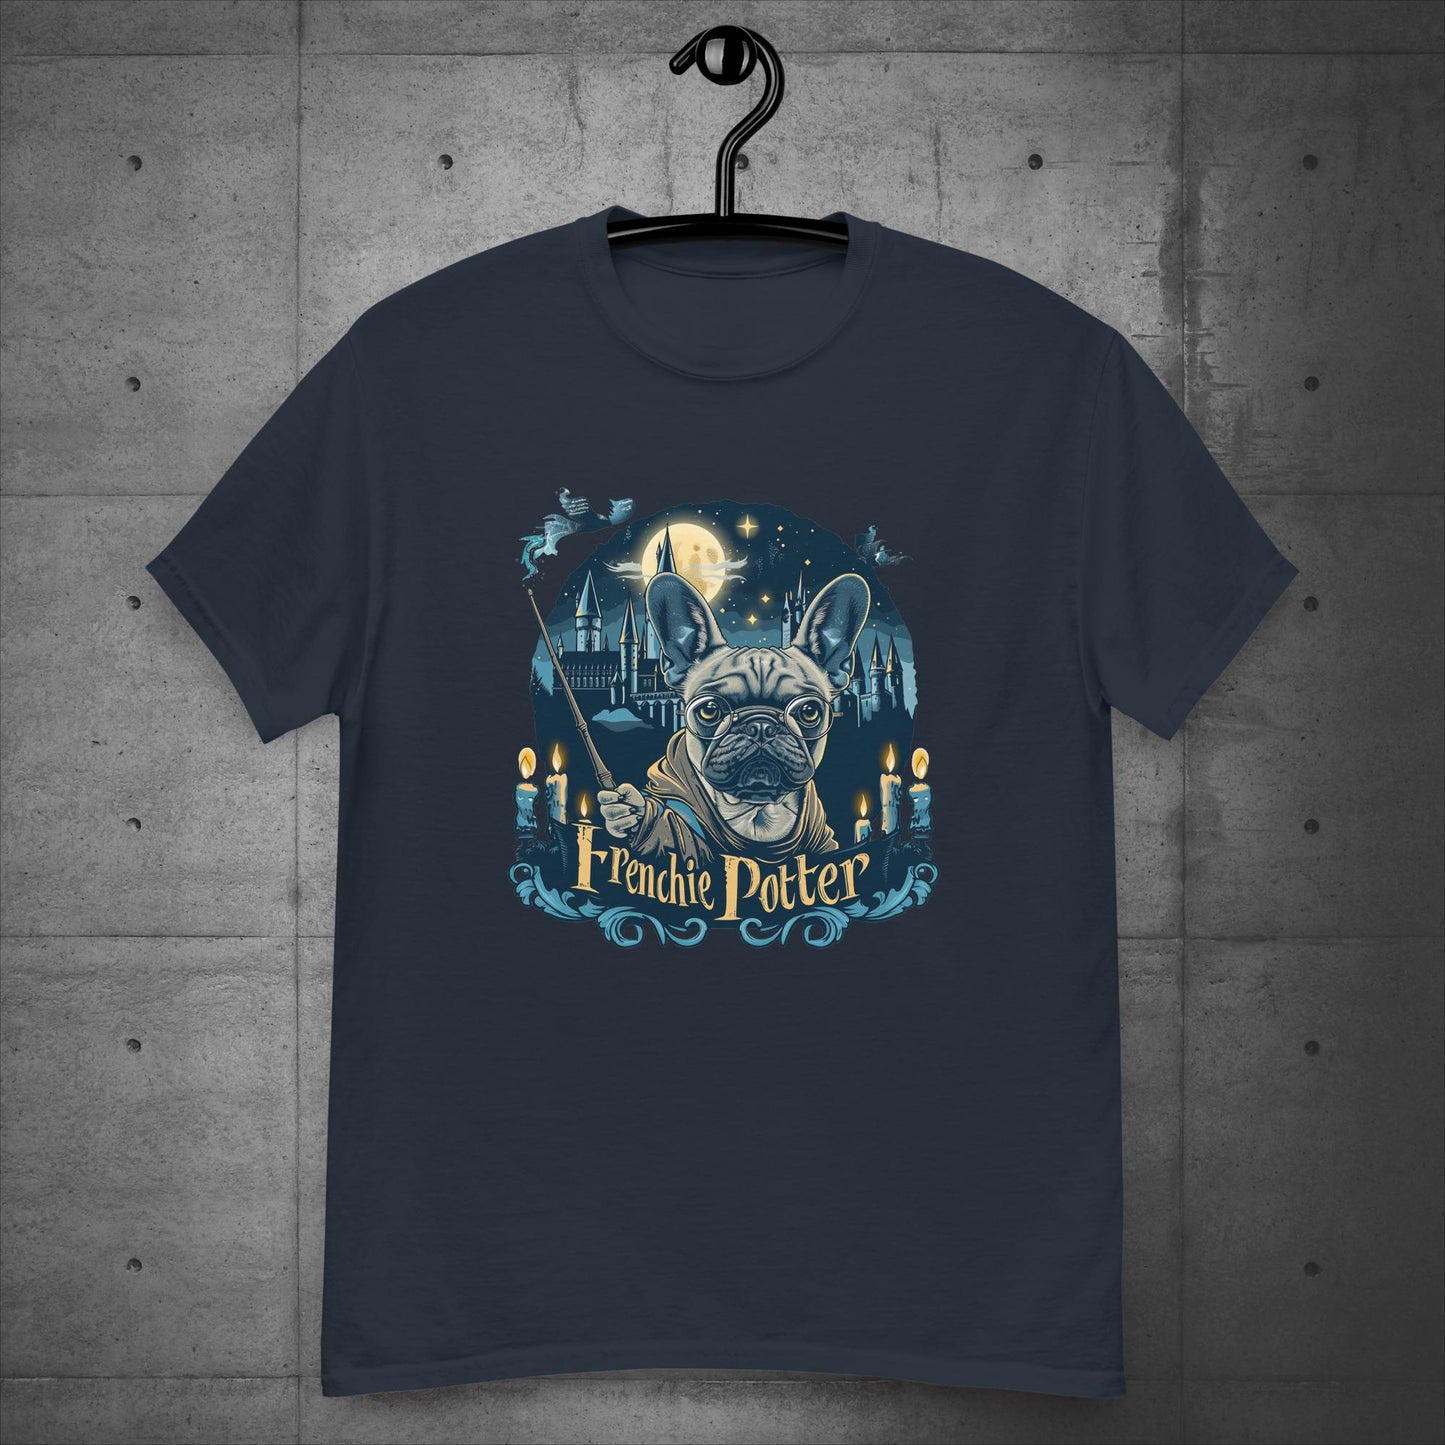 Unisex "Frenchie Potter" T-Shirt: